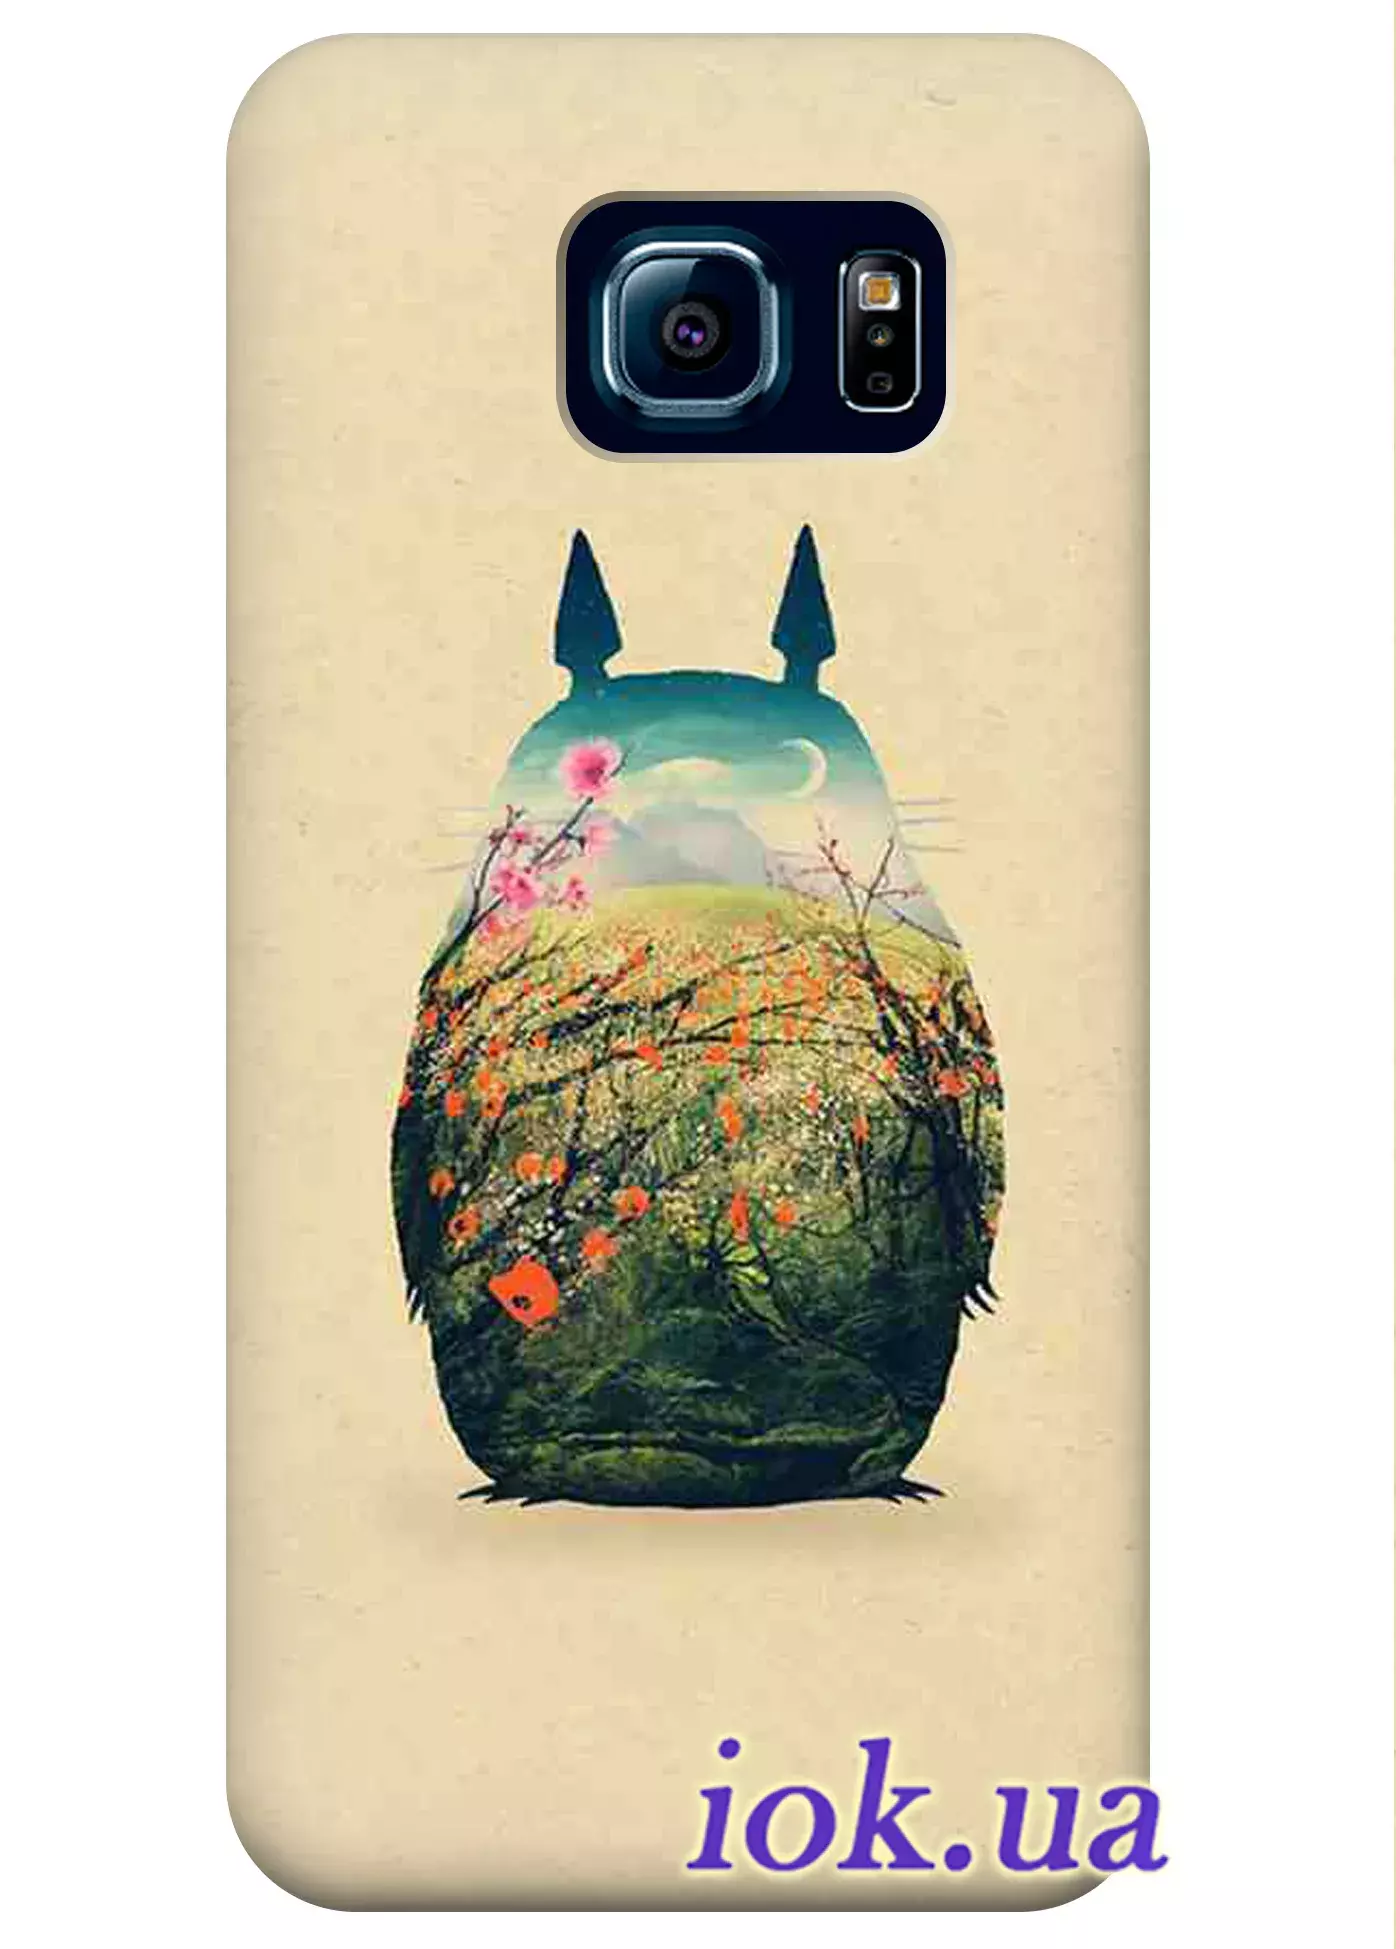 Чехол для Galaxy S6 Edge Plus - Totoro